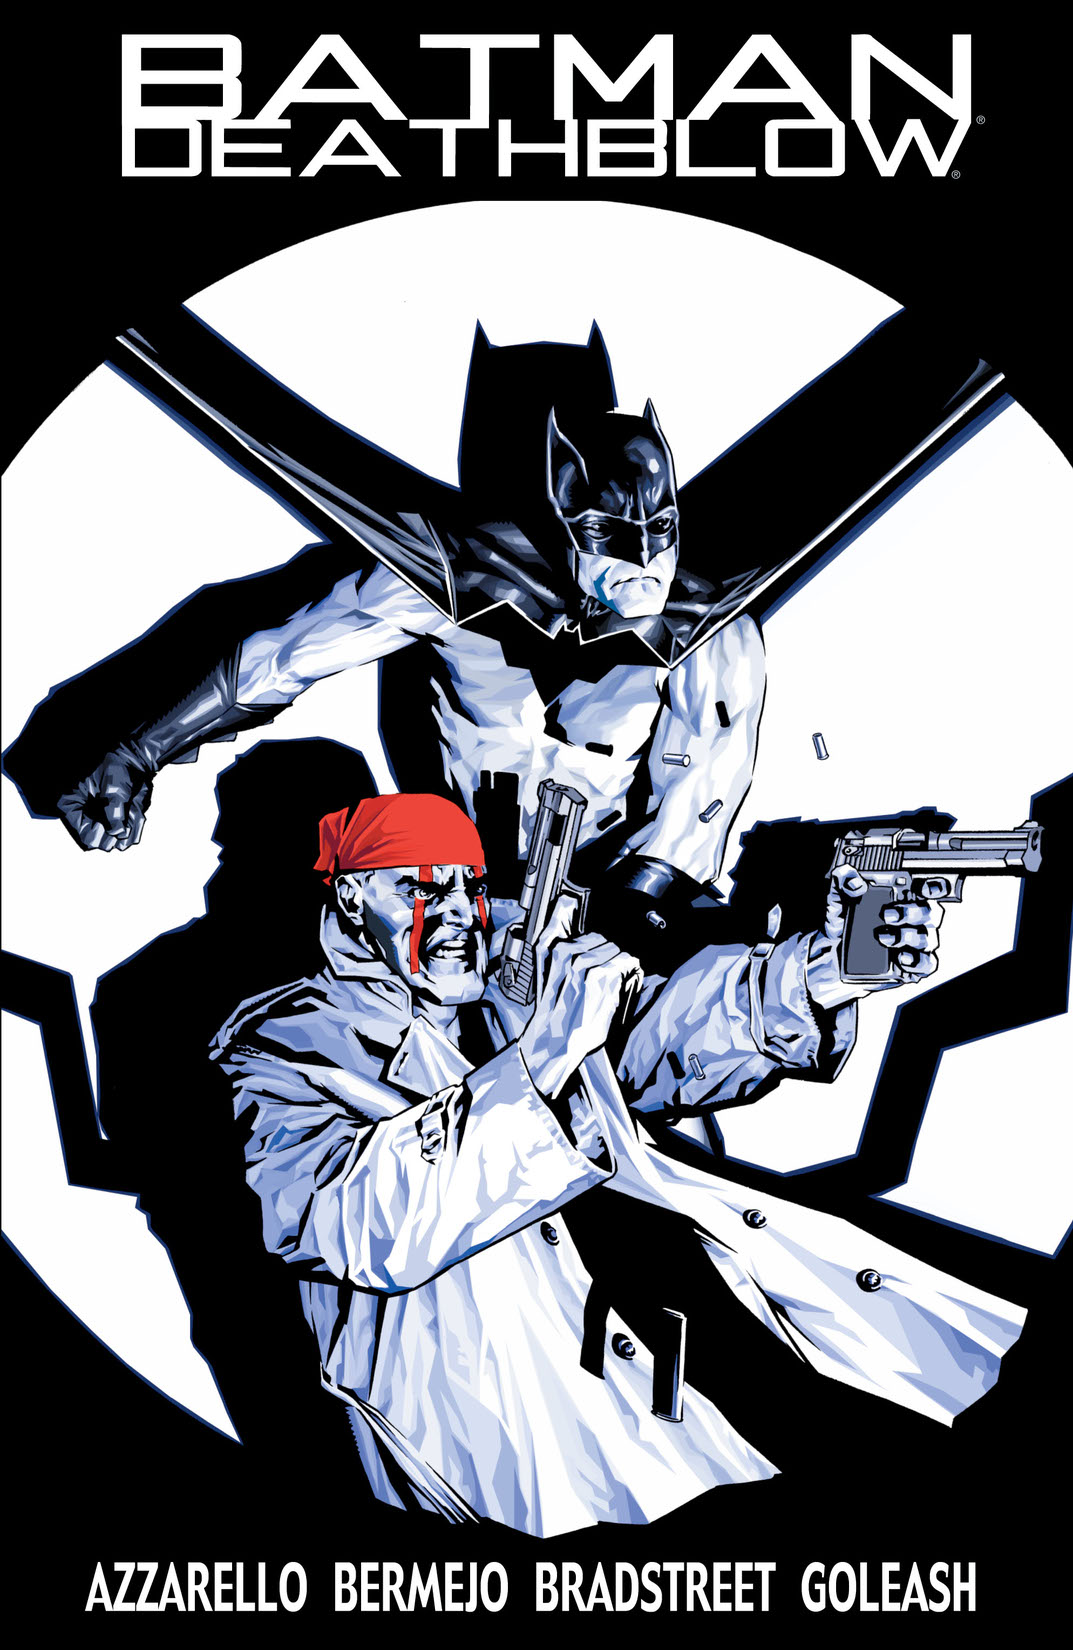 Batman/Deathblow #1 preview images